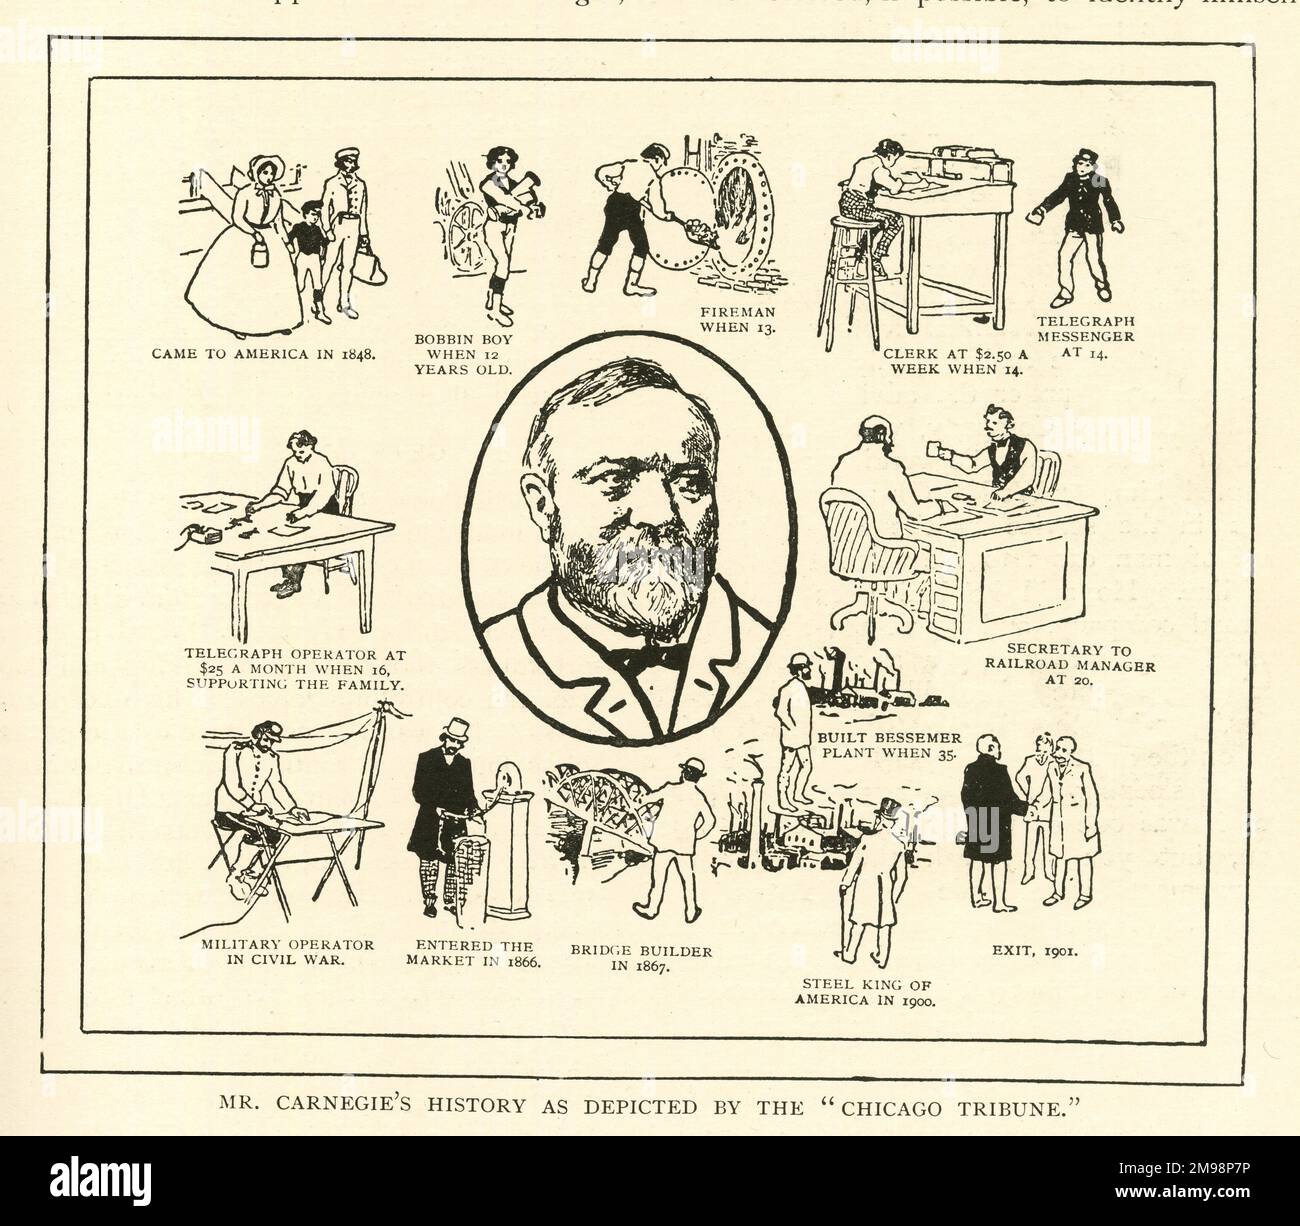 La historia de Andrew Carnegie como la representa el Chicago Tribune - la vida llena de acontecimientos de un hombre hecho a sí mismo. Foto de stock